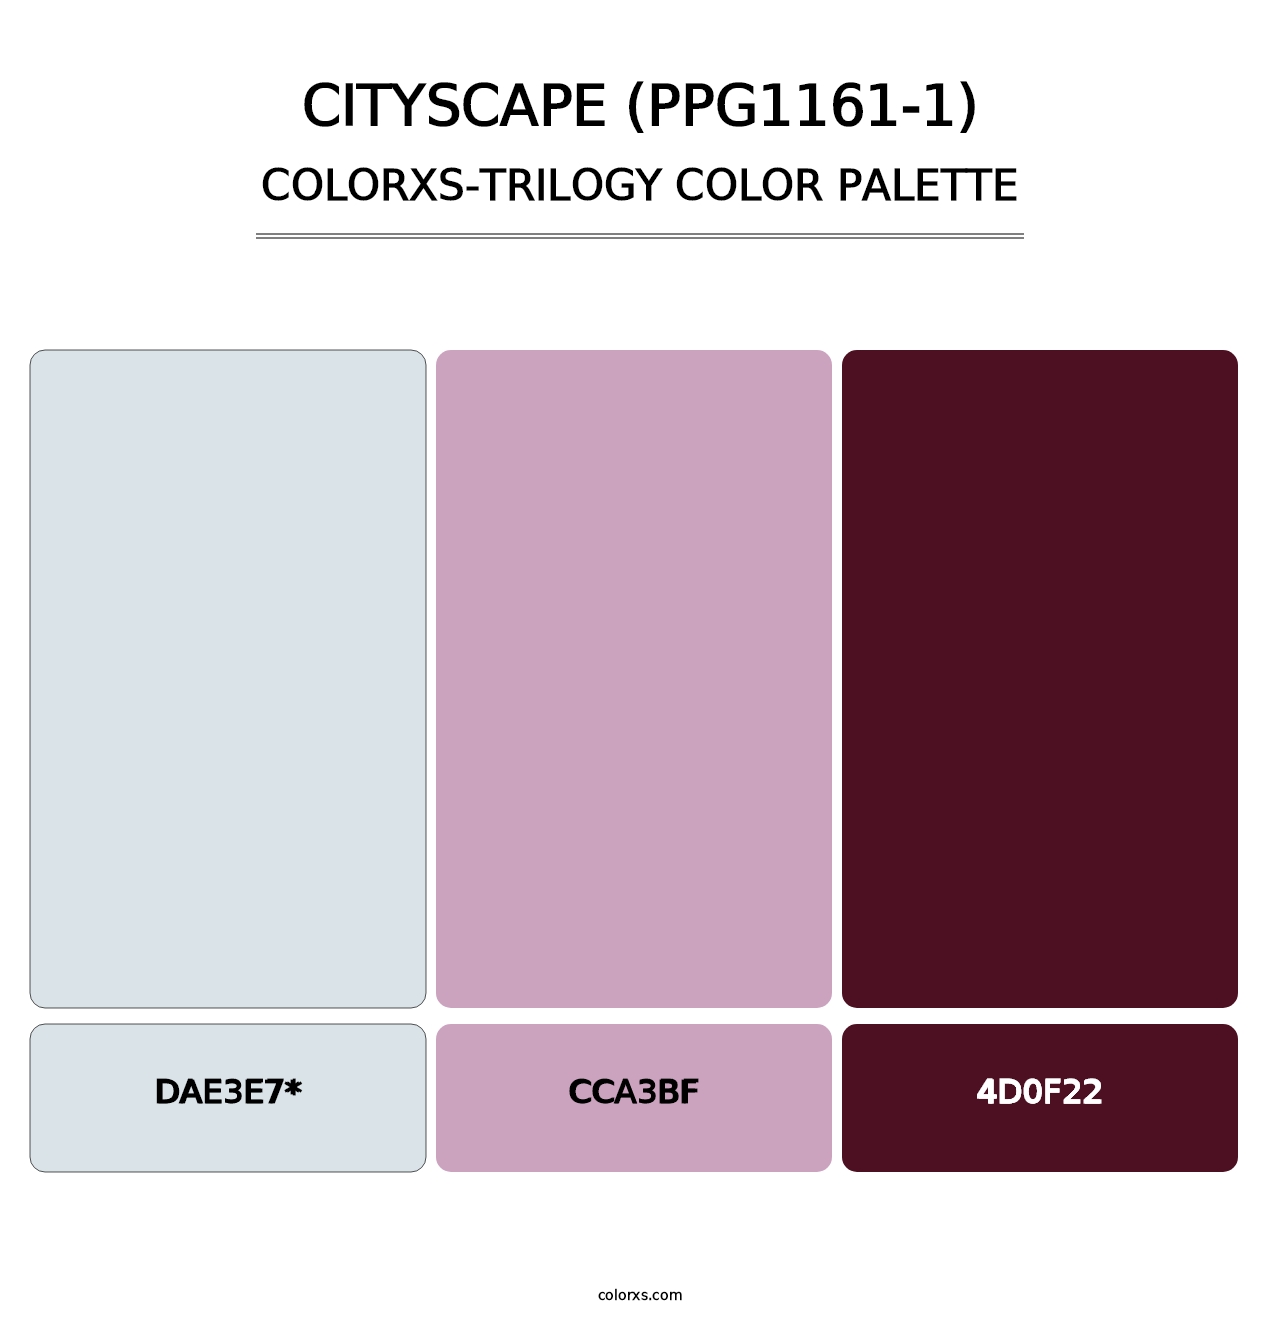 Cityscape (PPG1161-1) - Colorxs Trilogy Palette